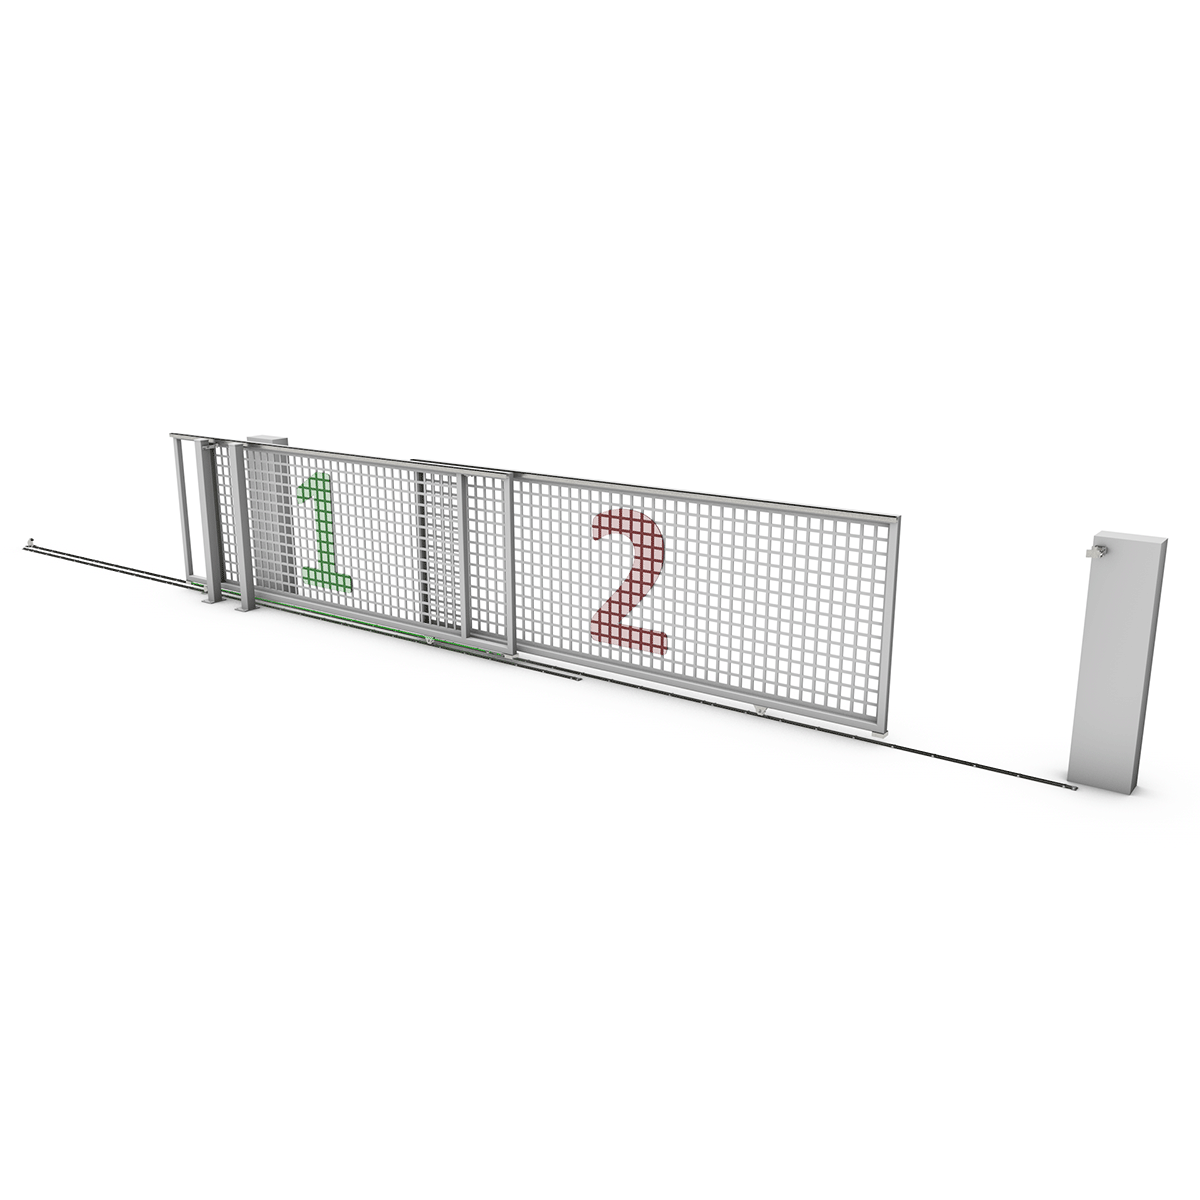 Telescopic Sliding Gate Hardware - Commercial Grade Telescopic Sliding Gate for Restricted Spaces